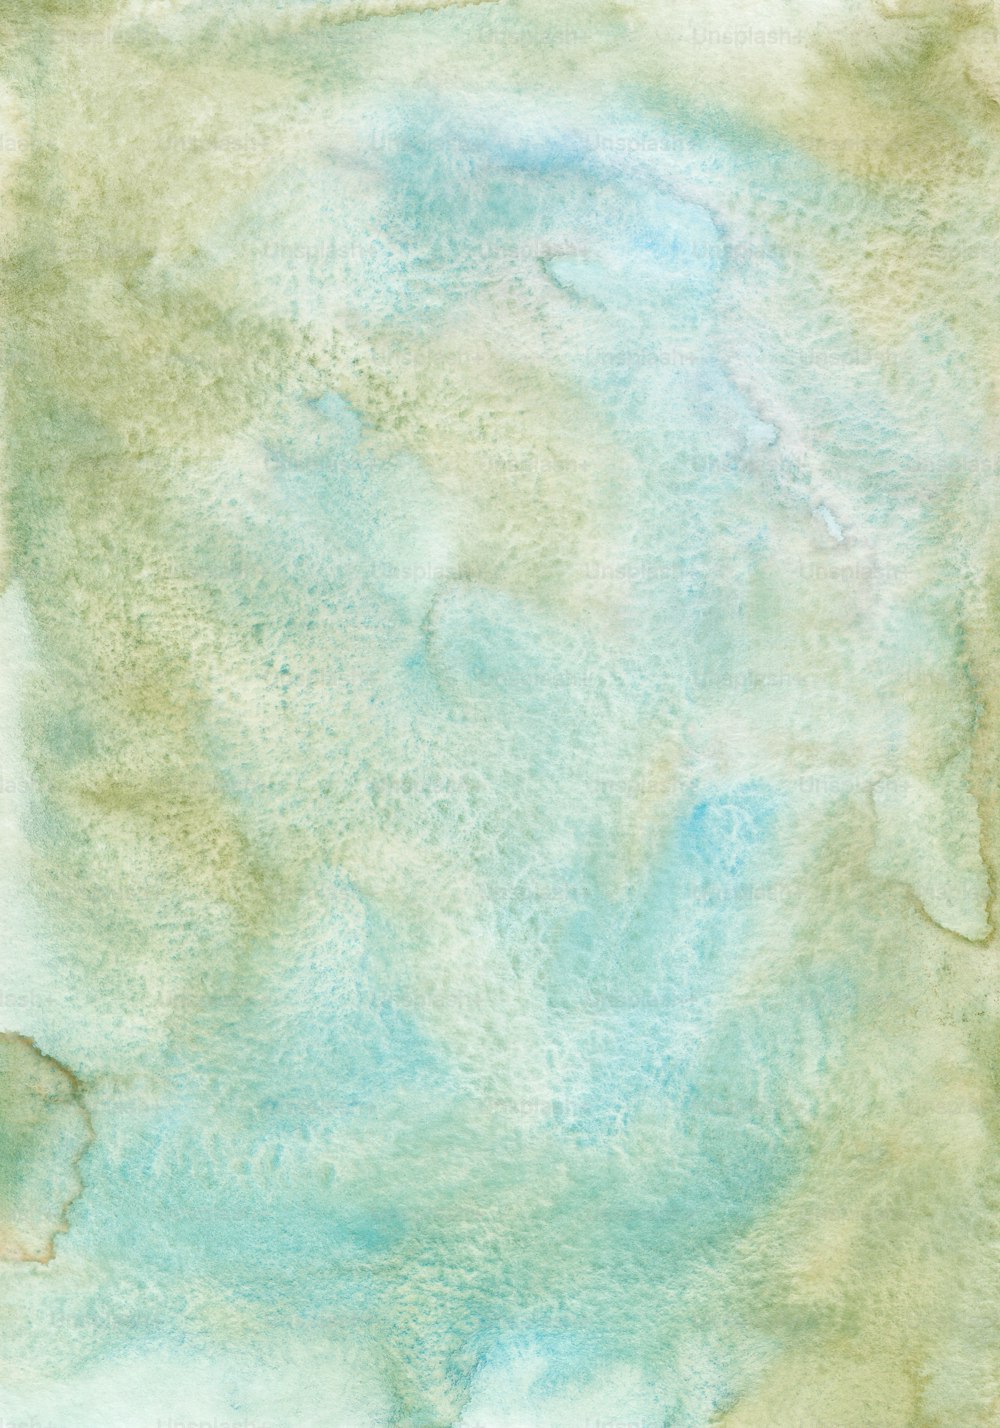 Una acuarela de fondo azul y verde